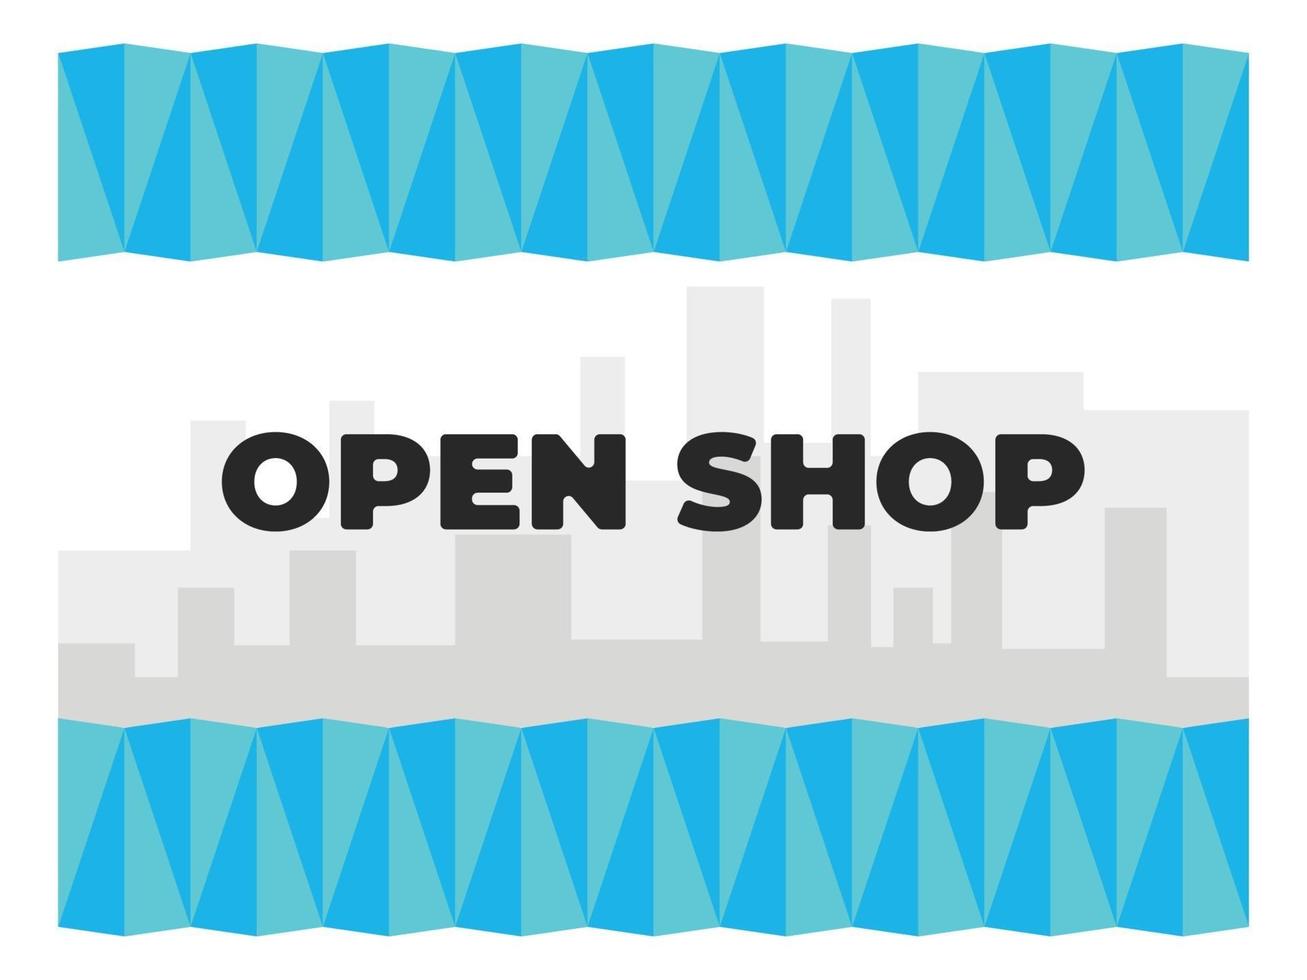 plantilla de diseño de tienda abierta, abierta ahora, venta abierta, tienda y mercado vector